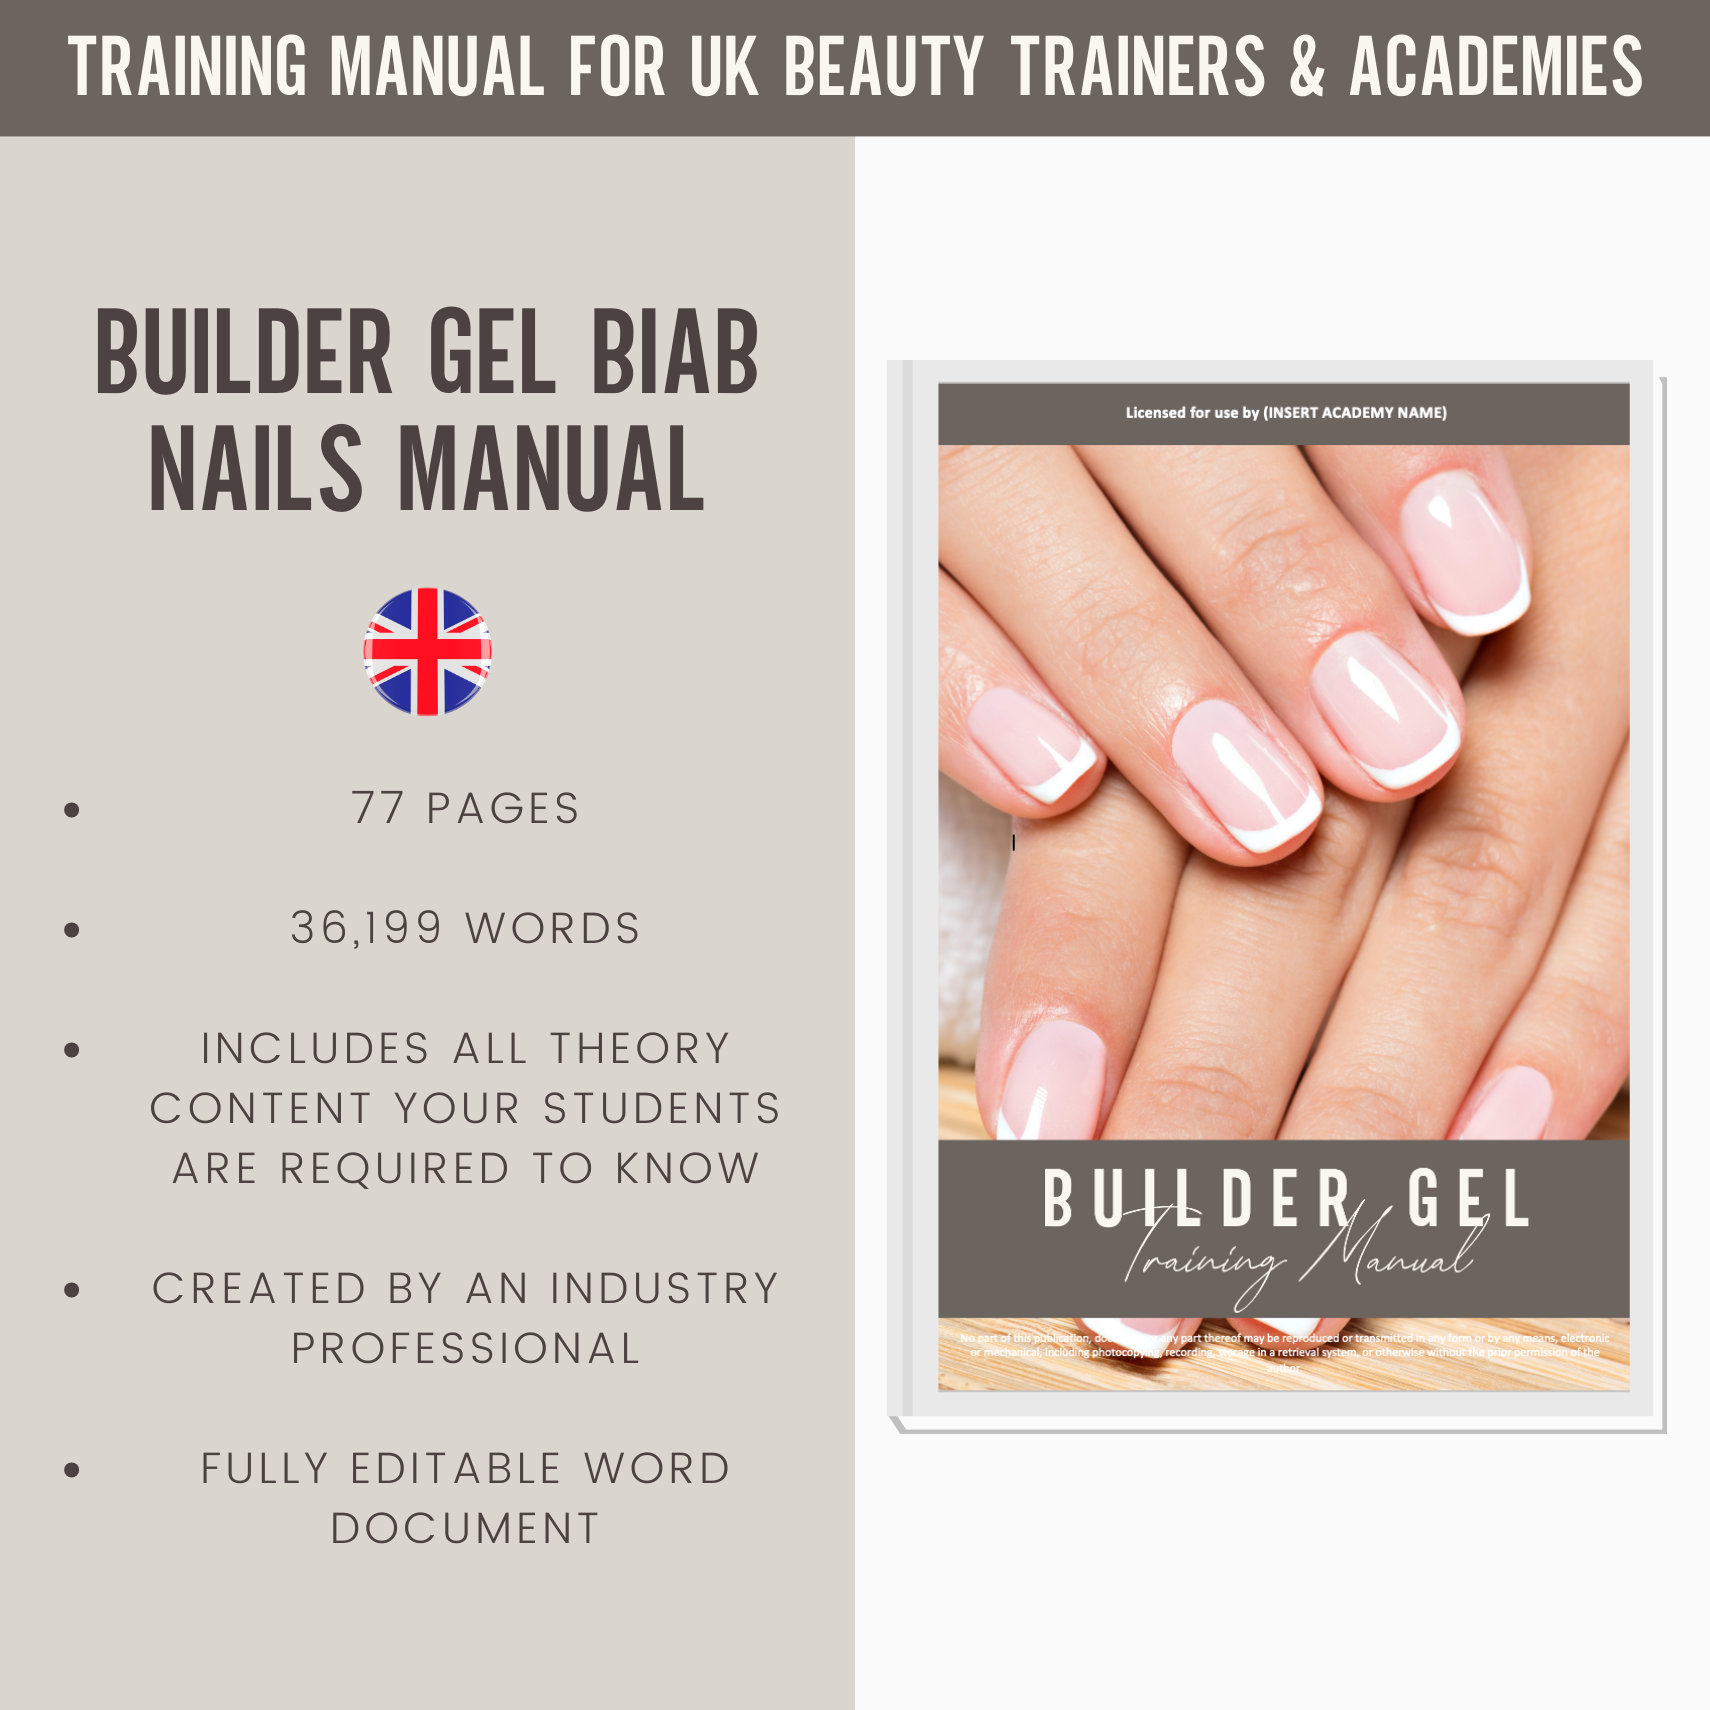 Builder Gel BIAB Nails Digital Editable Training Manual Guide UK